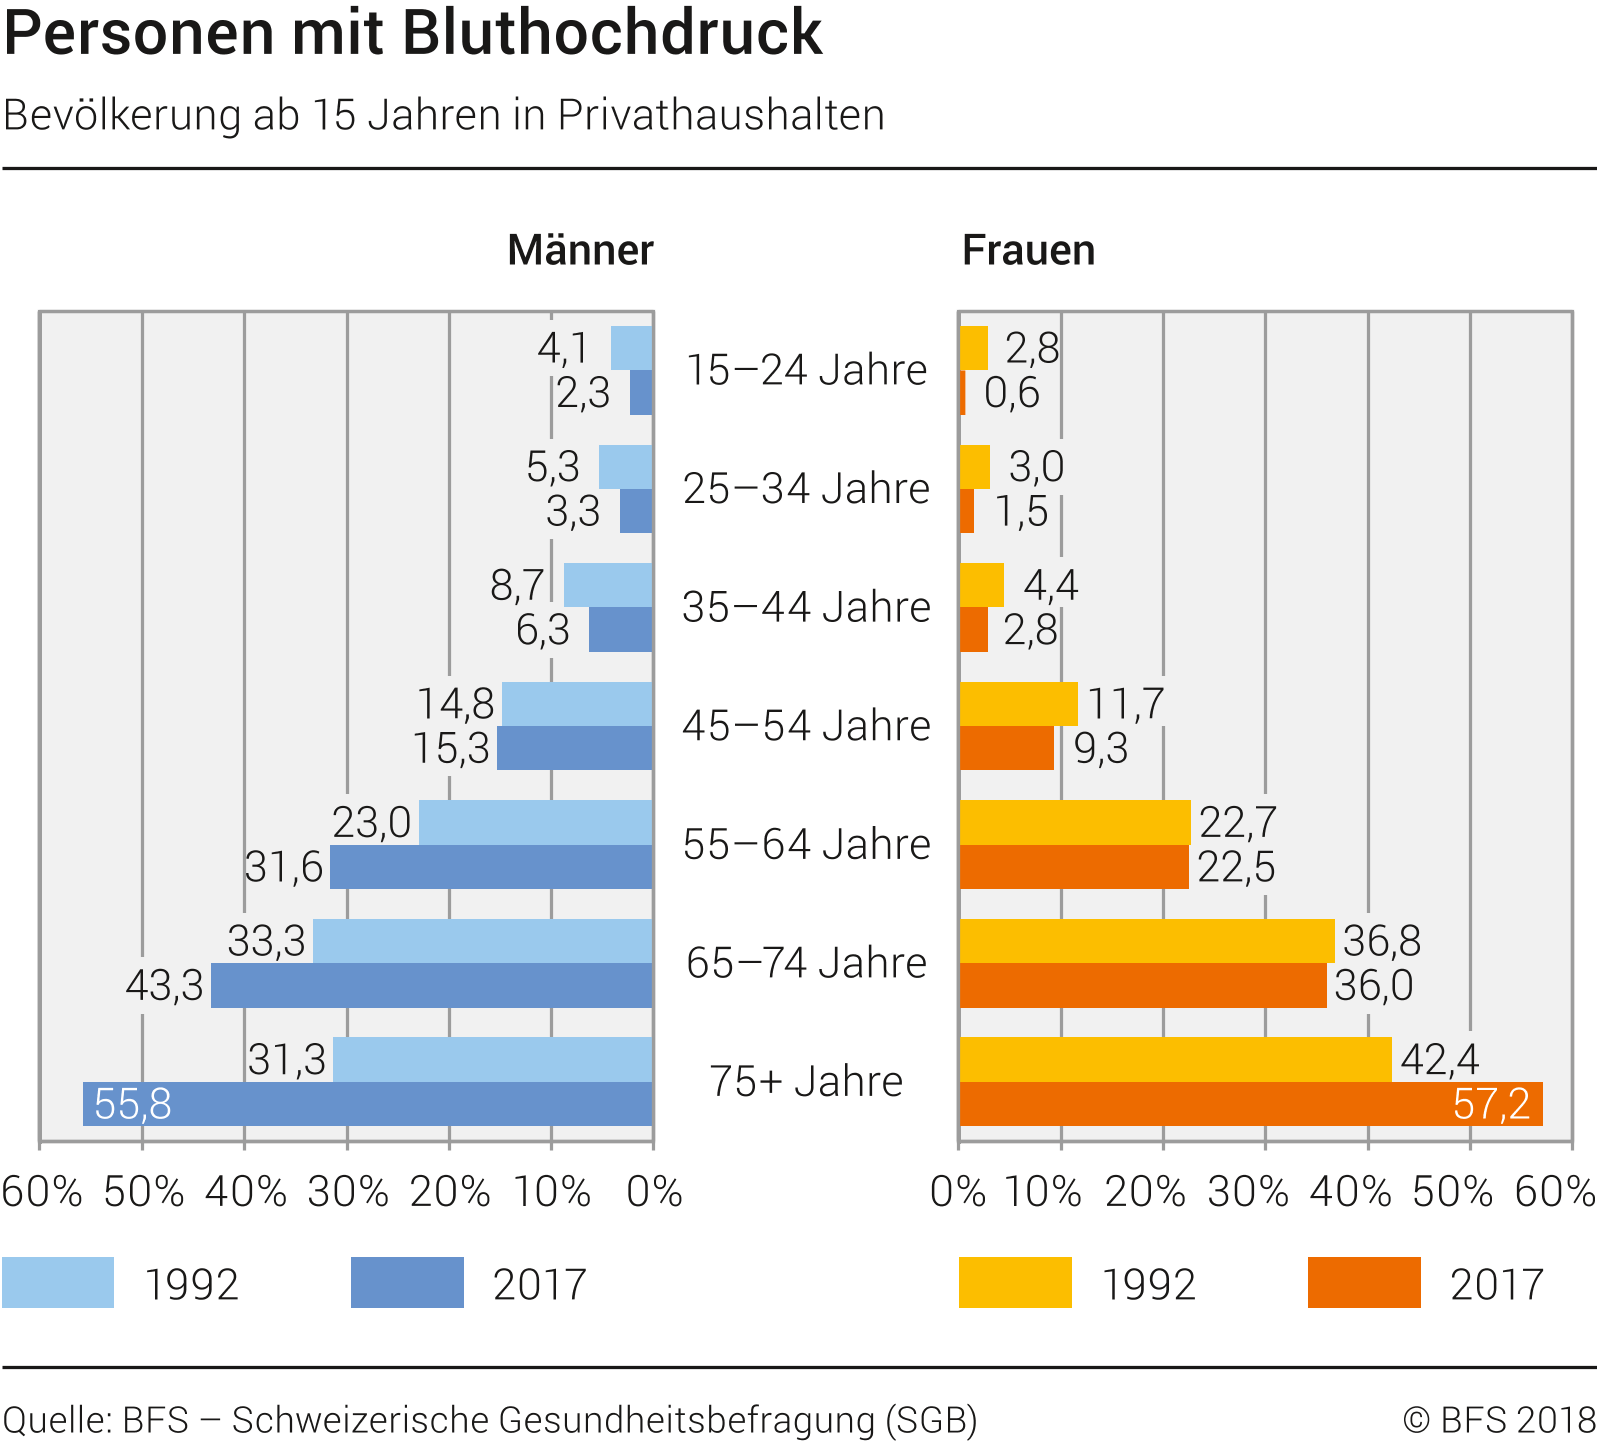 Personen mit Bluthochdruck - Statisik Bfs.